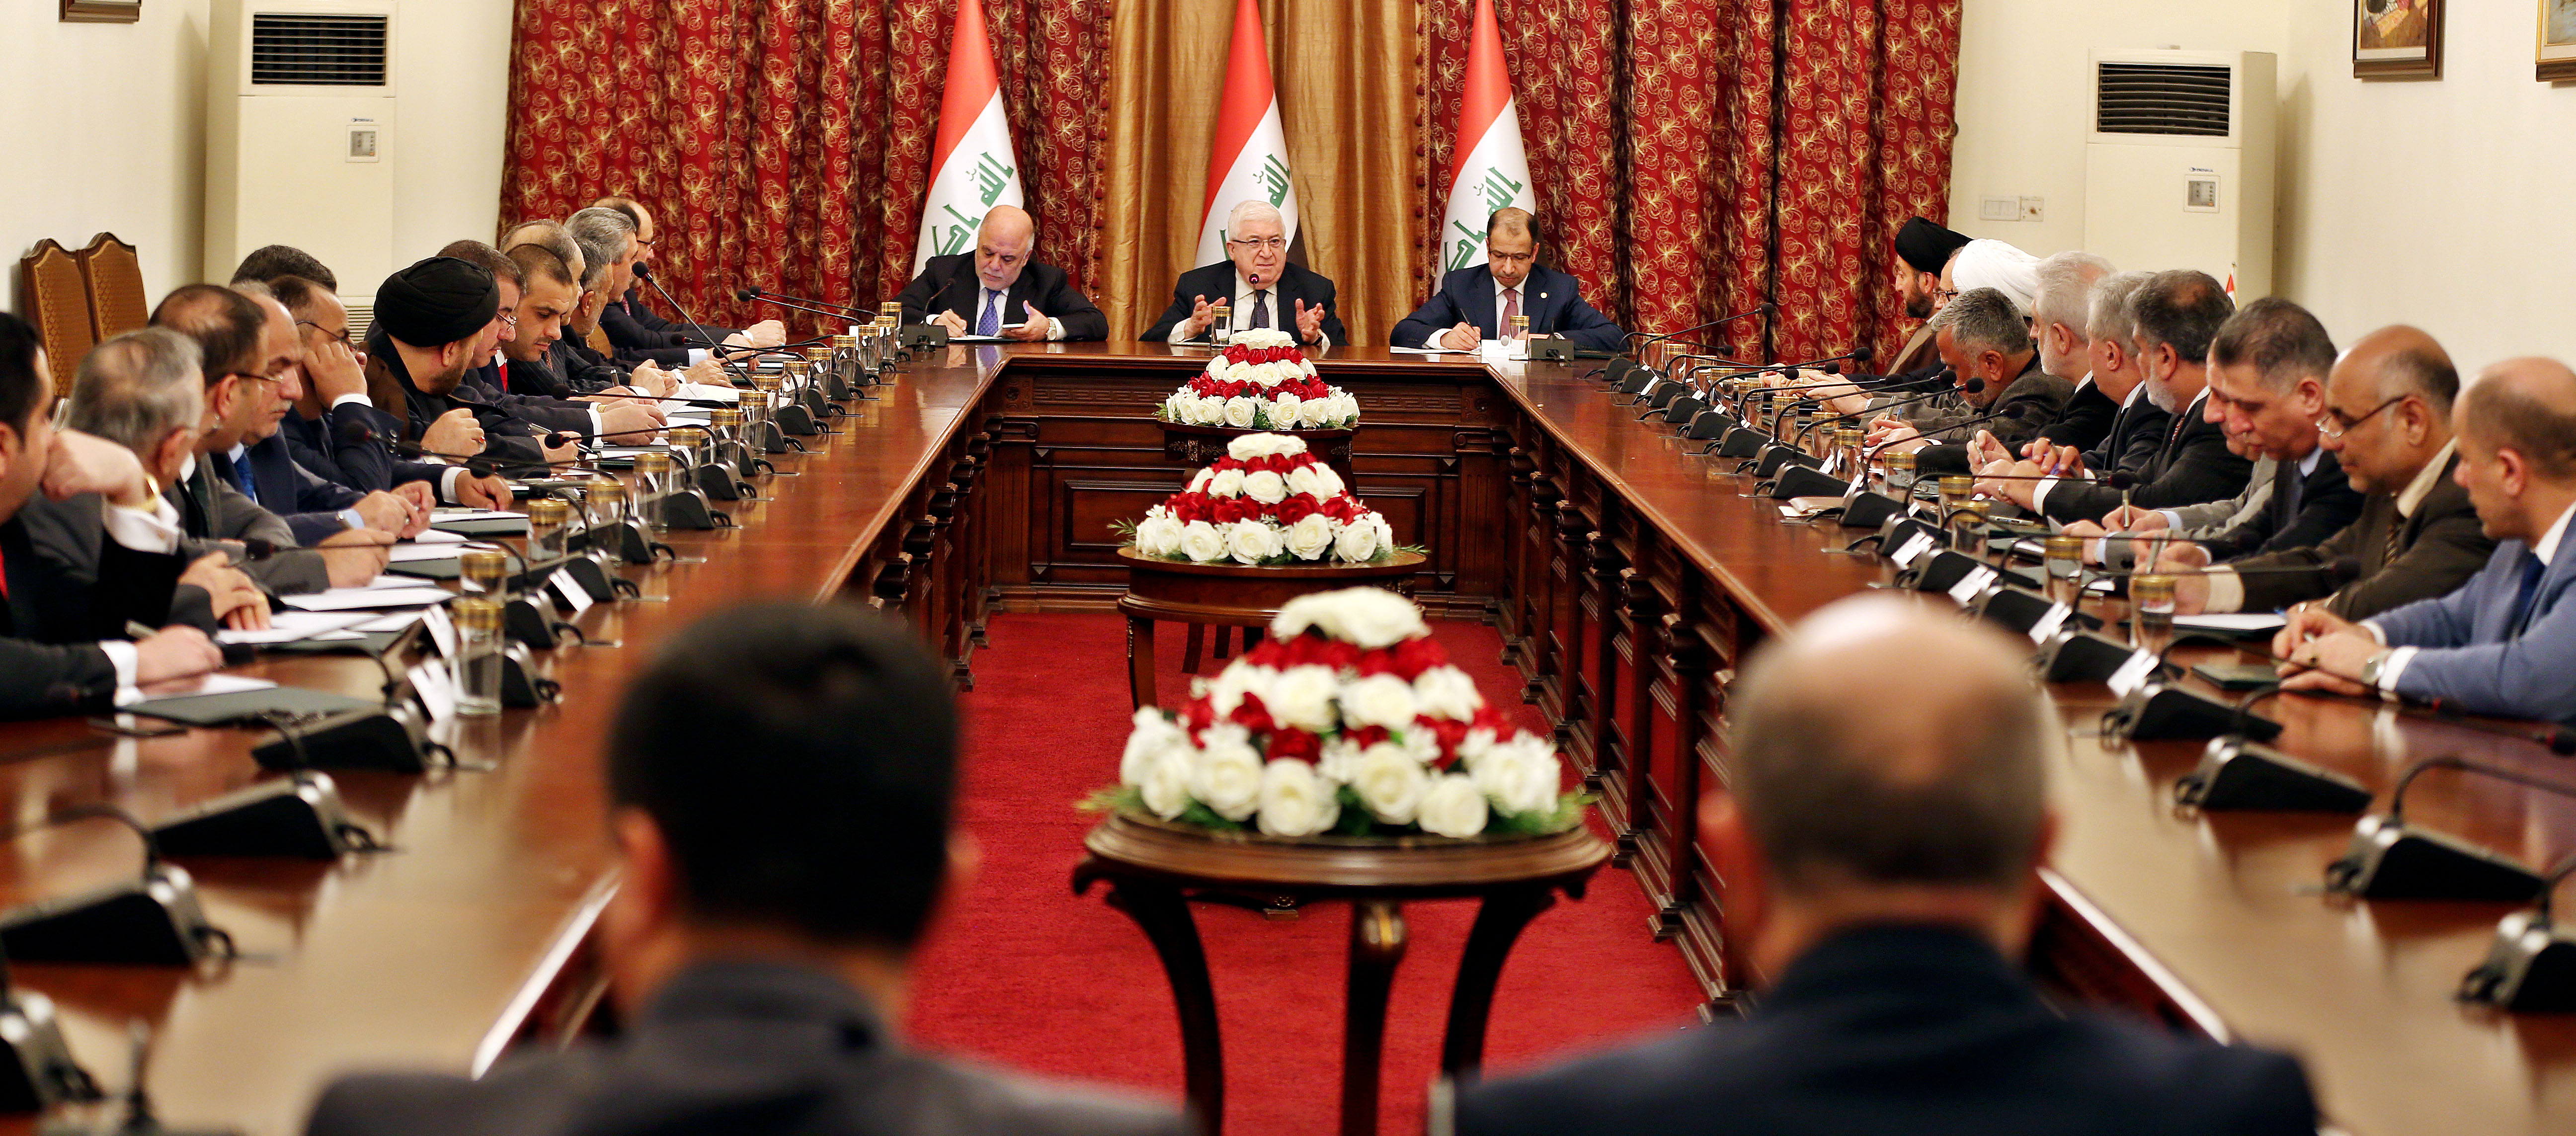 في عراق اليوم ، سياسة الرواتب تكريم للاقلية وعقوبة للاكثرية